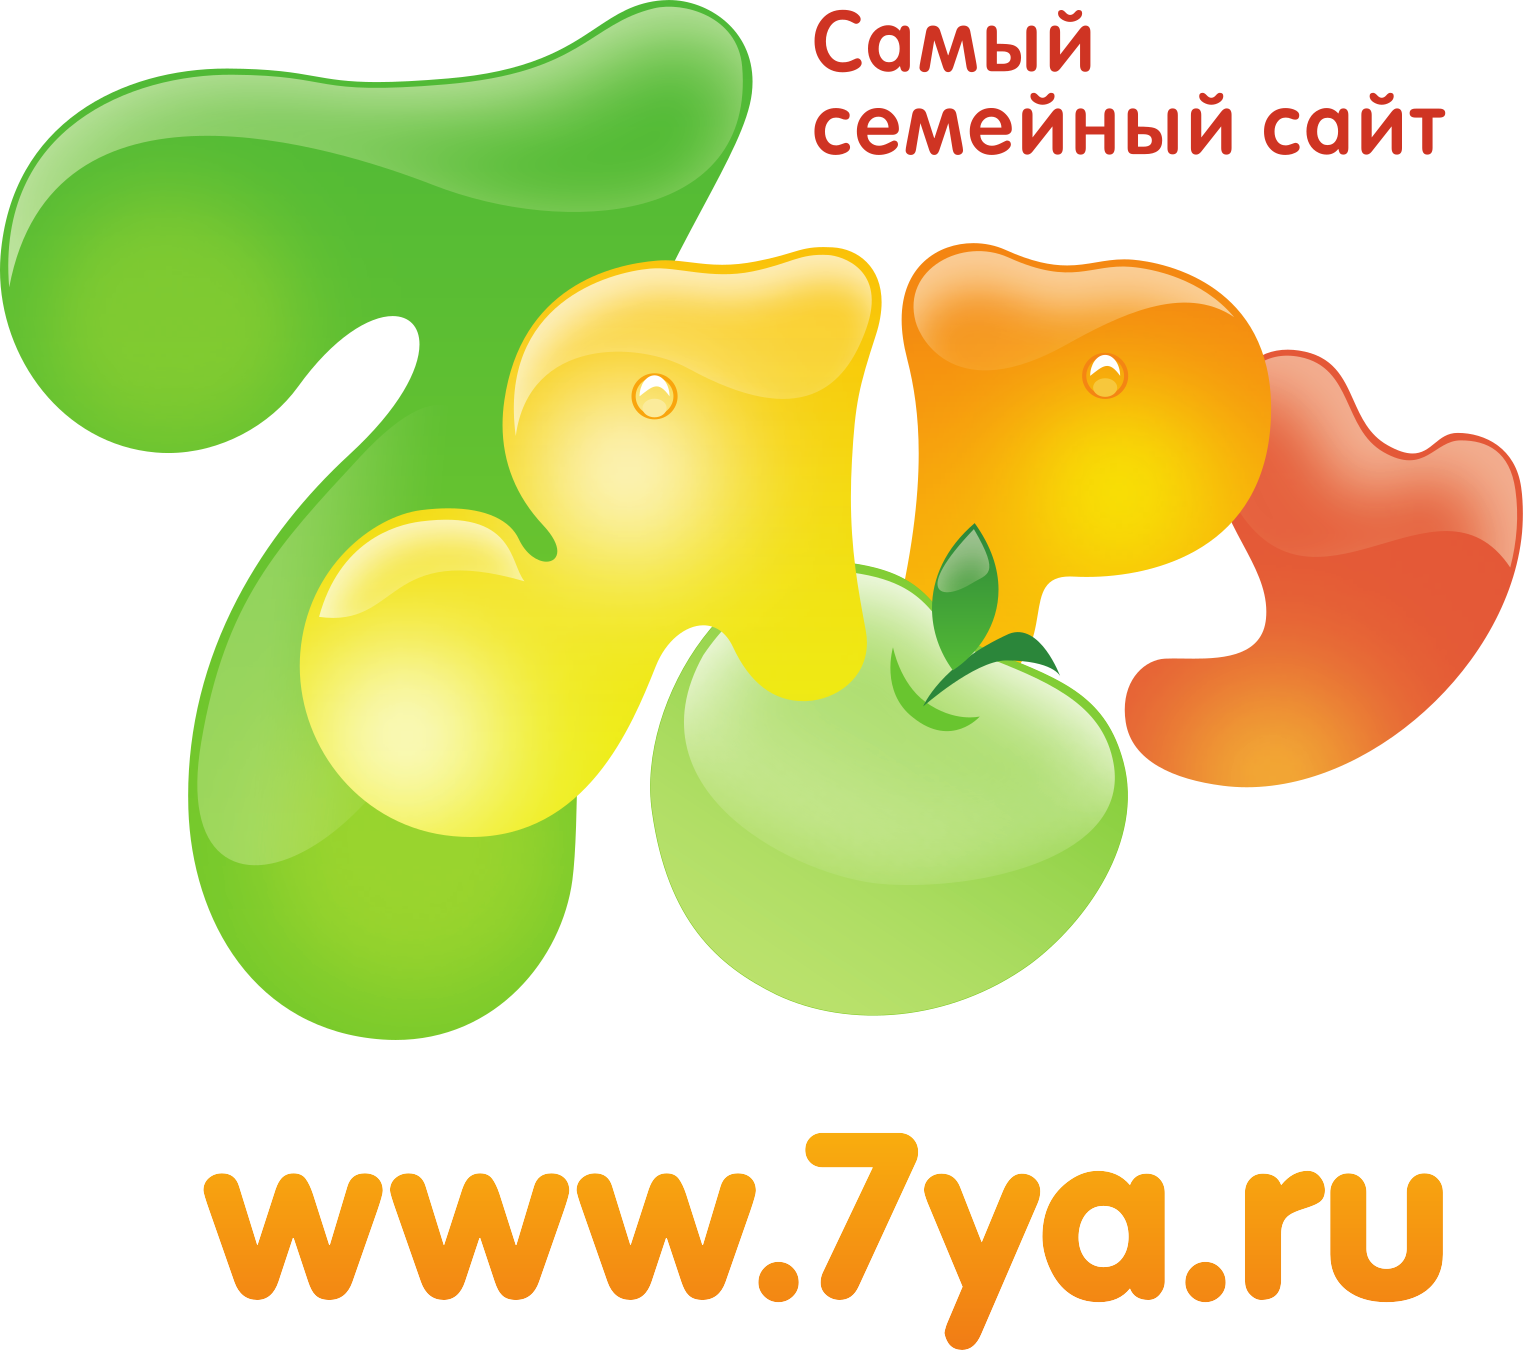 Https ya ru сайт. 7я. 7я.ру. 7я.ру логотип. Семья ру лого.